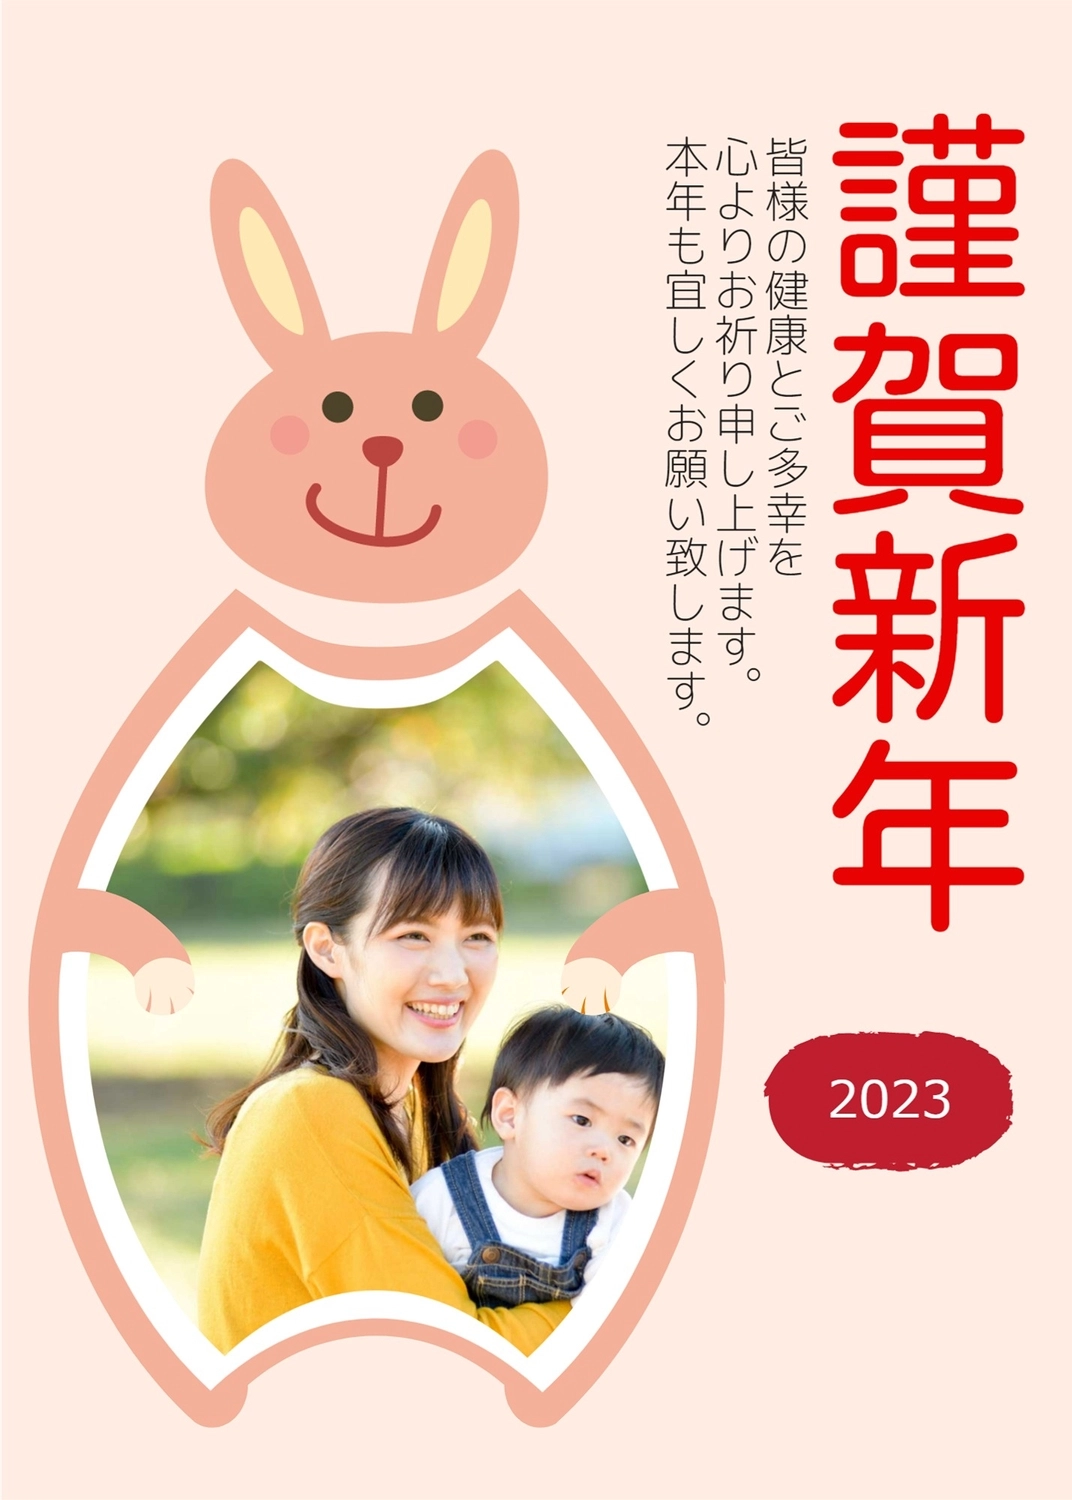 謹賀新年　うさぎフォトフレーム, Decorative frame, fourth sign of Chinese zodiac (The Hare, 5am-7am, east, February), 2023, New Year Card template